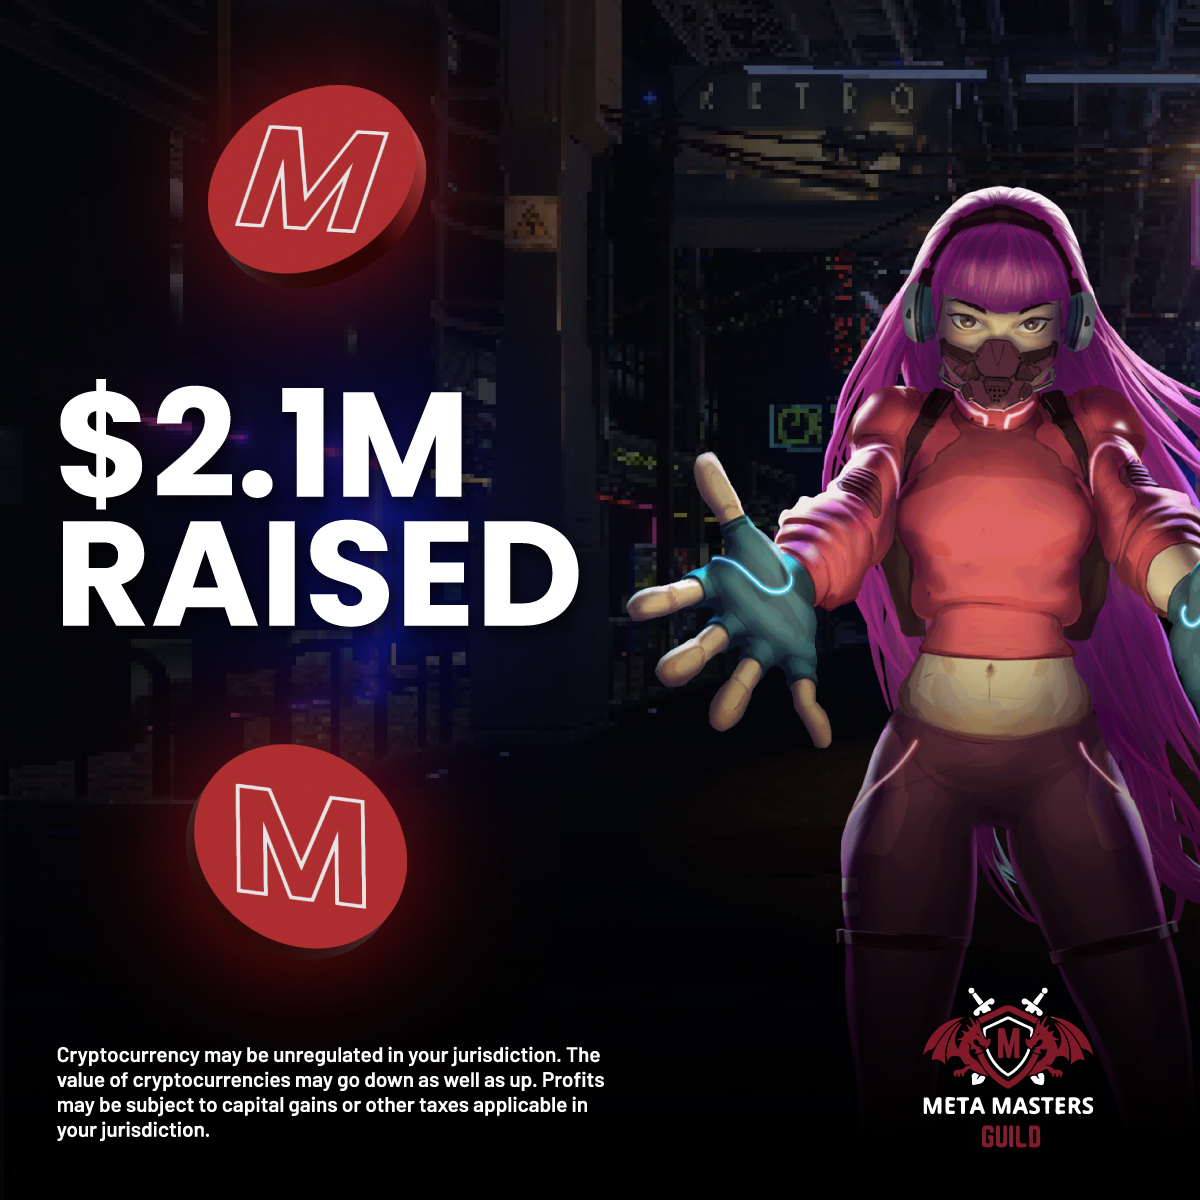 Meta Masters Guild ultrapassa os US$ 2,5 milhões arrecadados na pré-venda – Restam apenas 2 dias no estágio 4